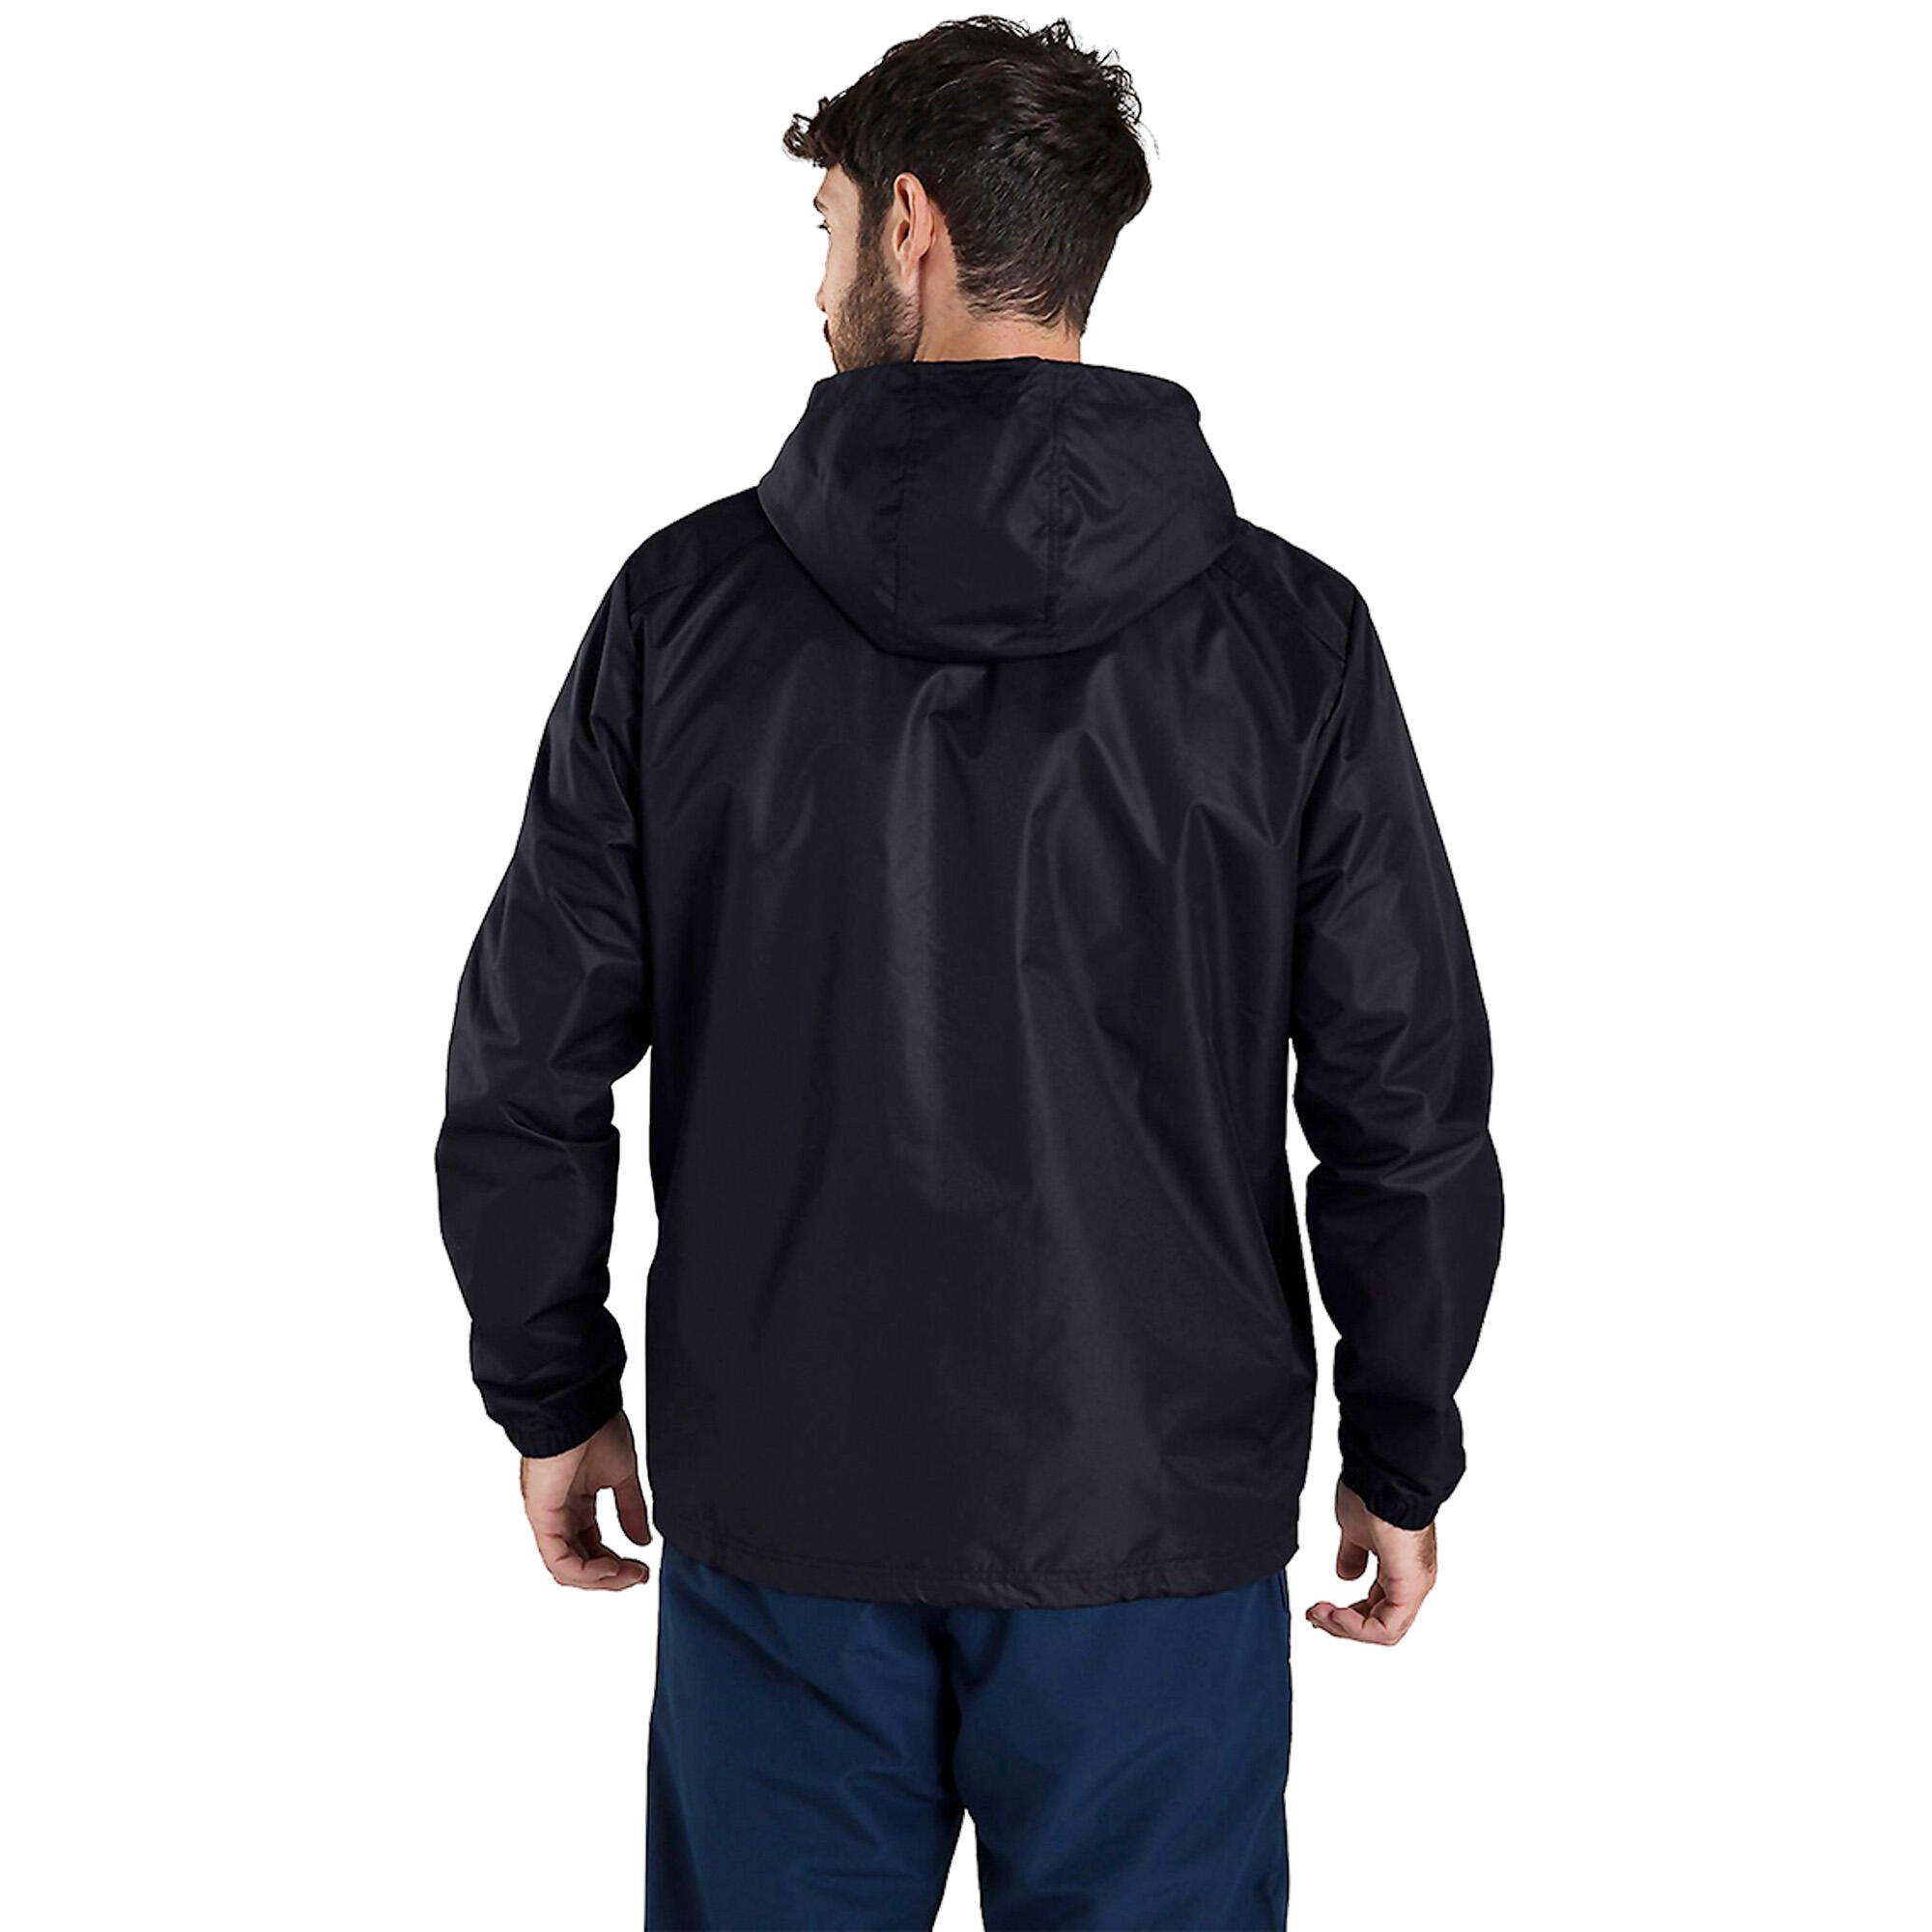 Mens Club Waterproof Jacket (Black) 4/4